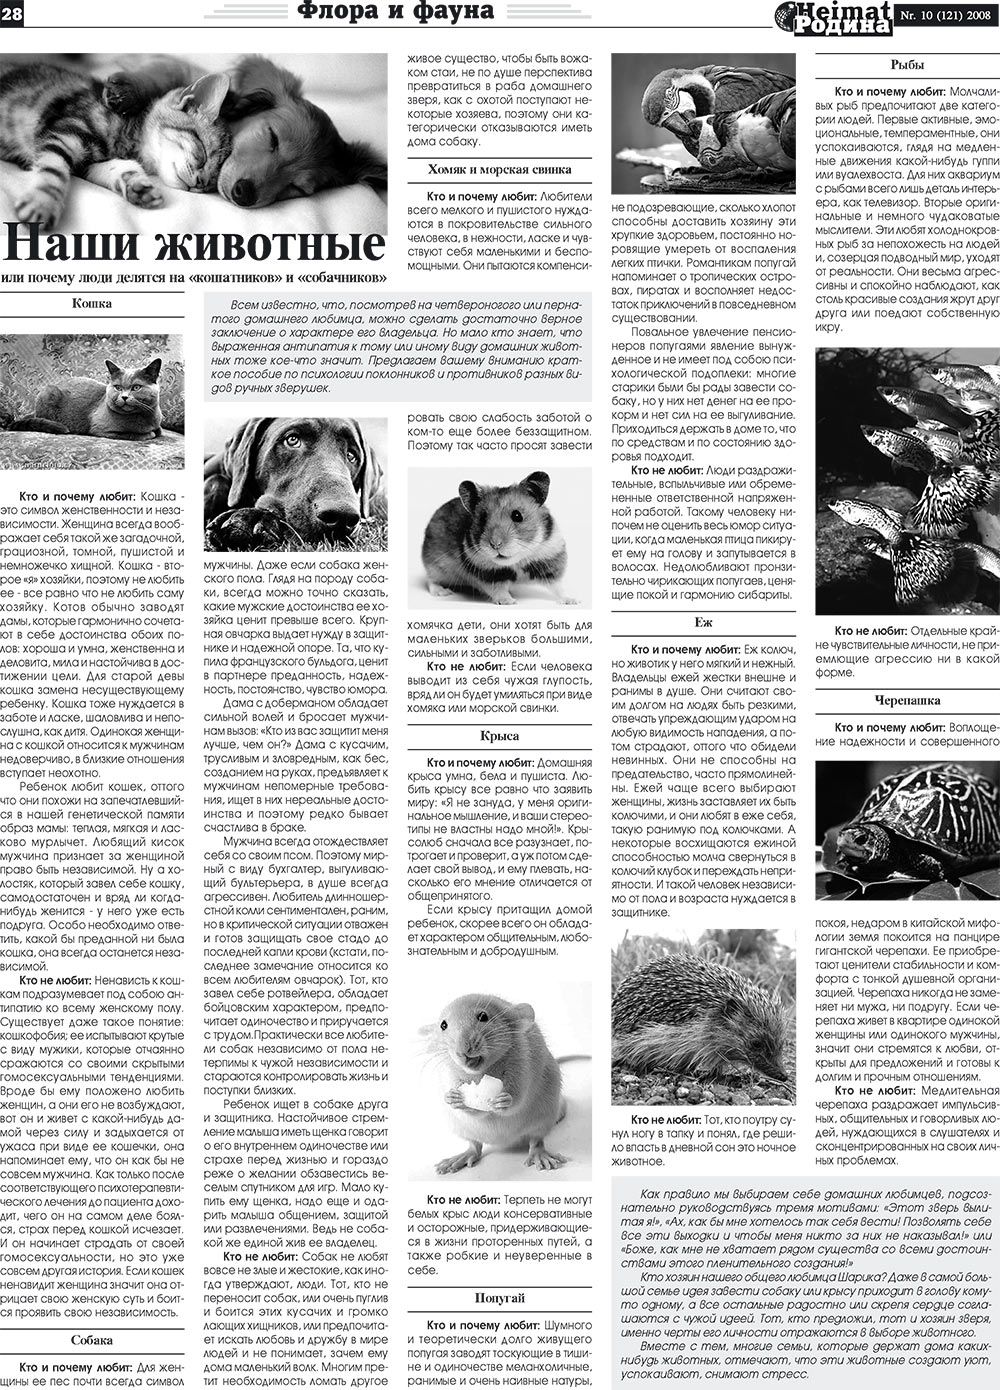 Heimat-Родина (газета). 2008 год, номер 10, стр. 28